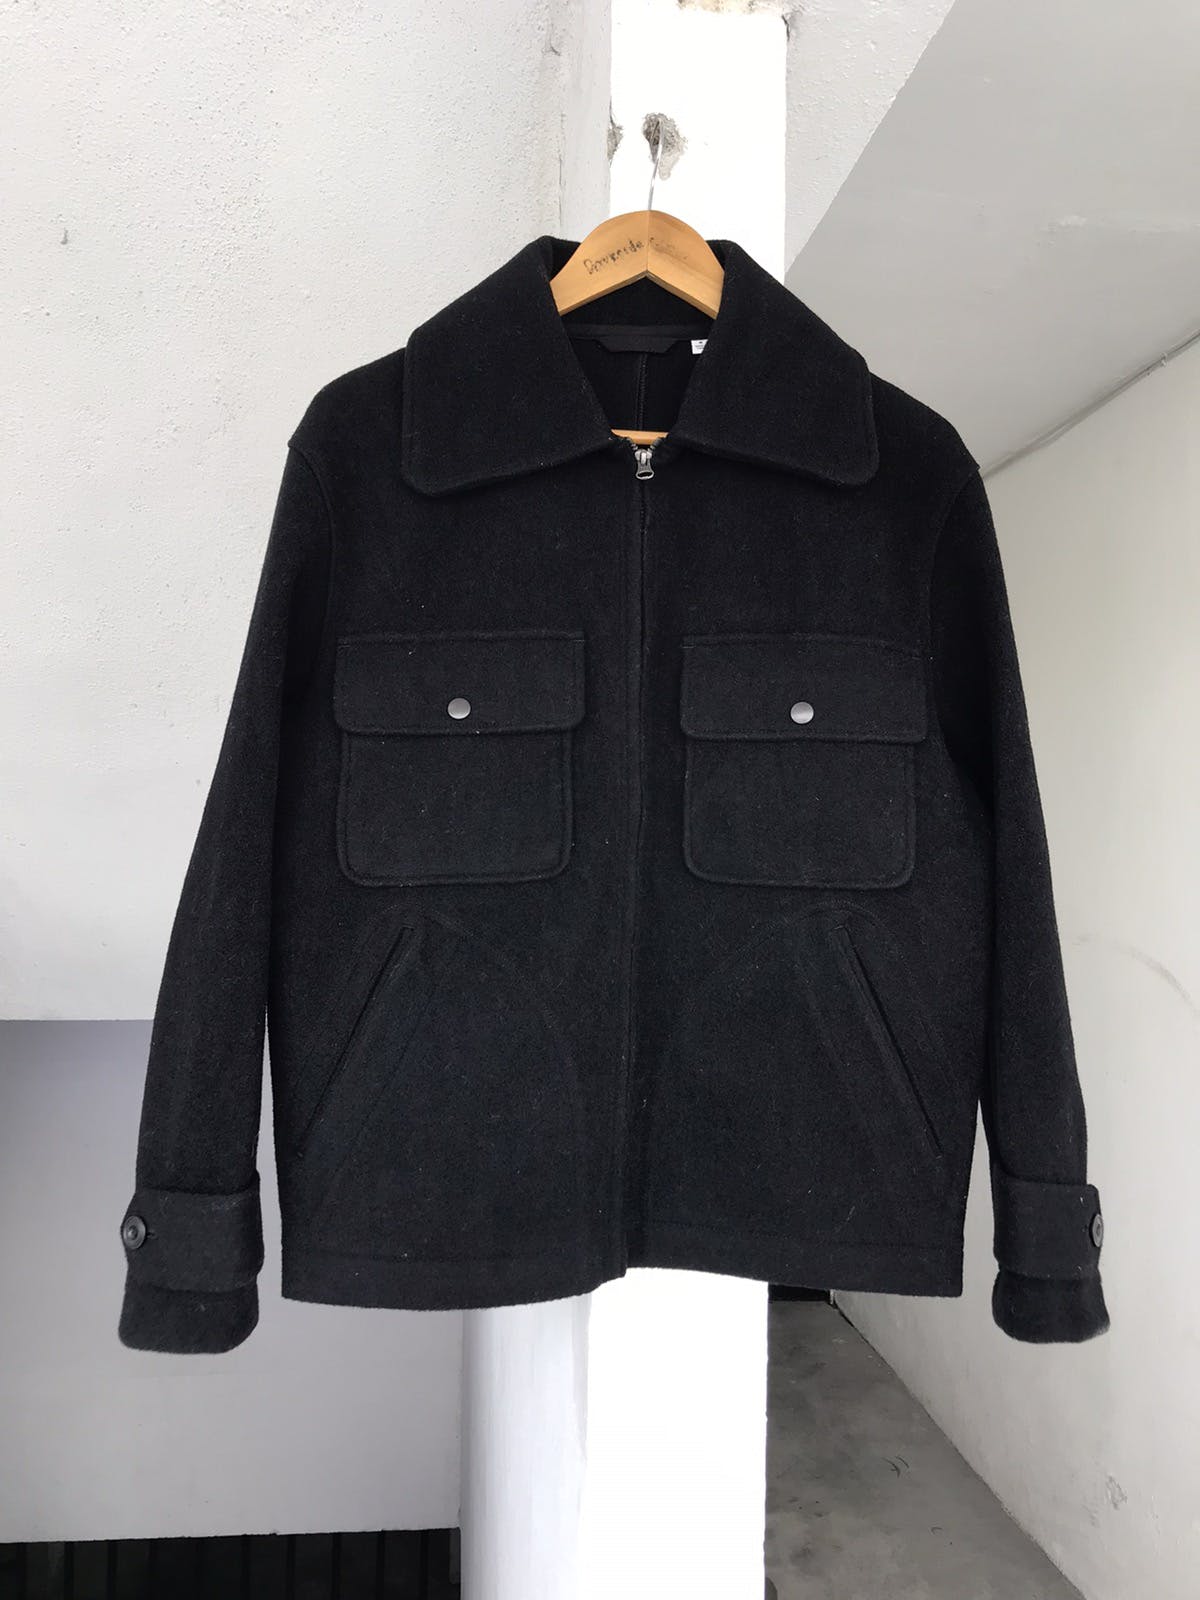 Christophe lemaire x ut Wool jacket - 3